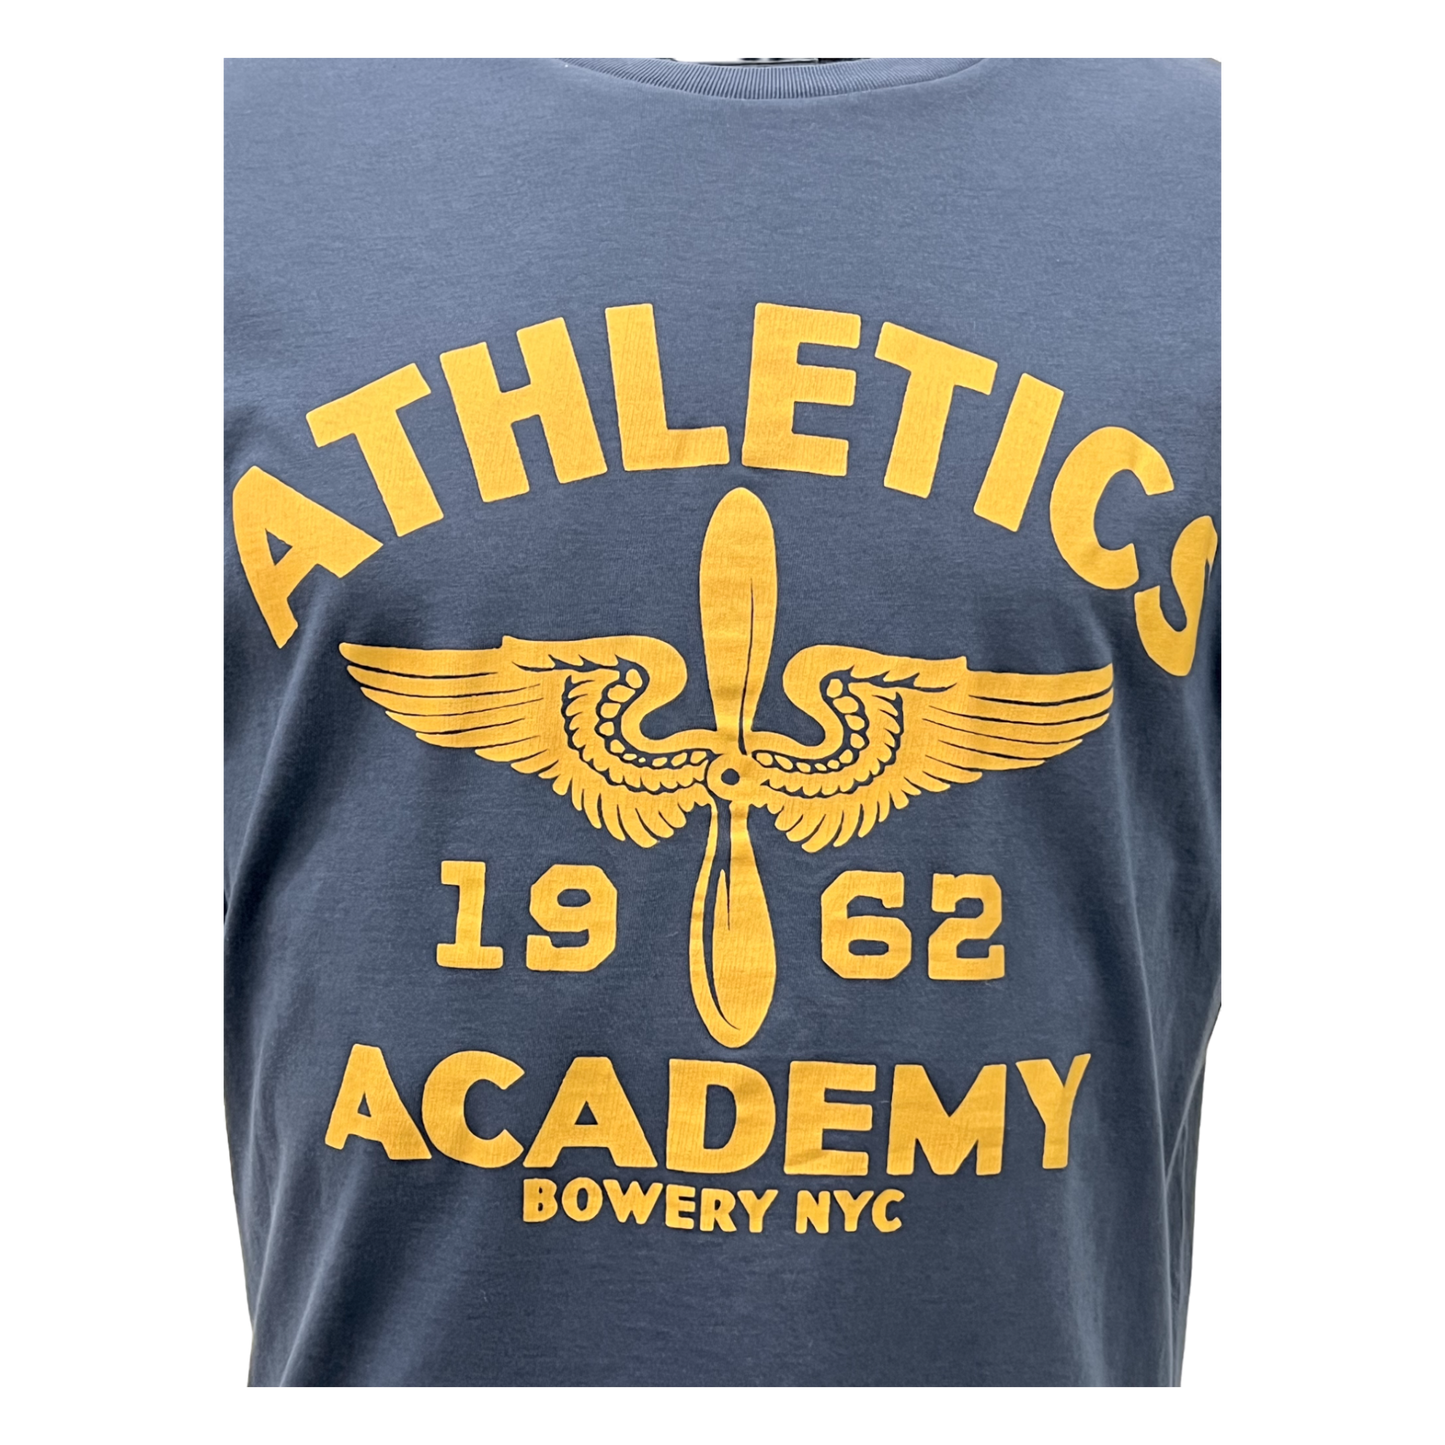 Bowery NYC,T-Shirt,Bowery NYC, Athletics Academy T-Shirt, mood indigo,UNIT Hamburg